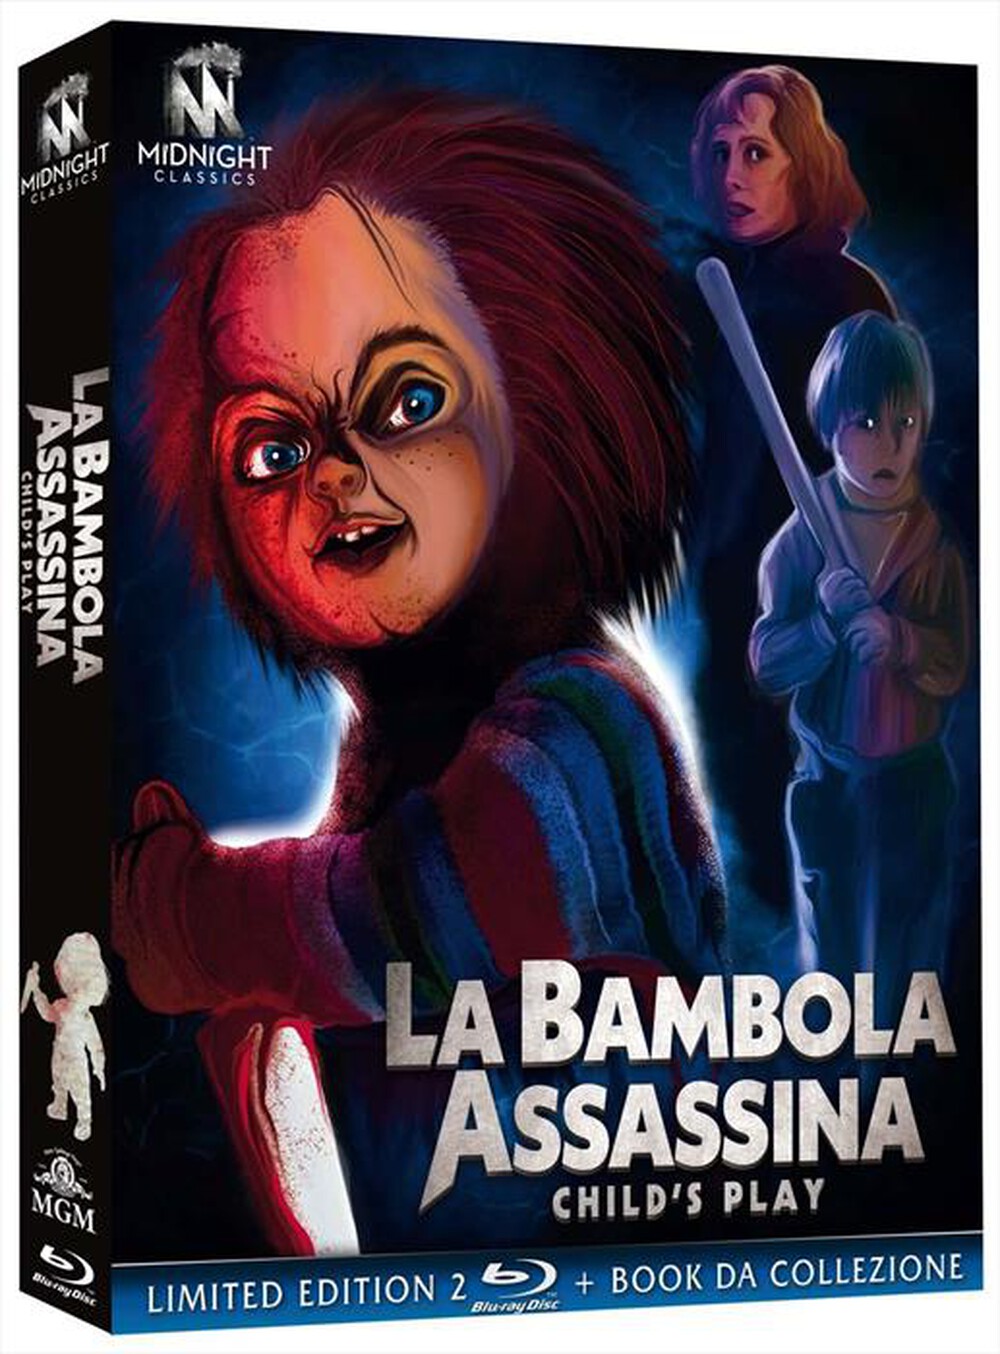 "Midnight Factory - Bambola Assassina (La) (1988) (Ltd Edition) (3 B"